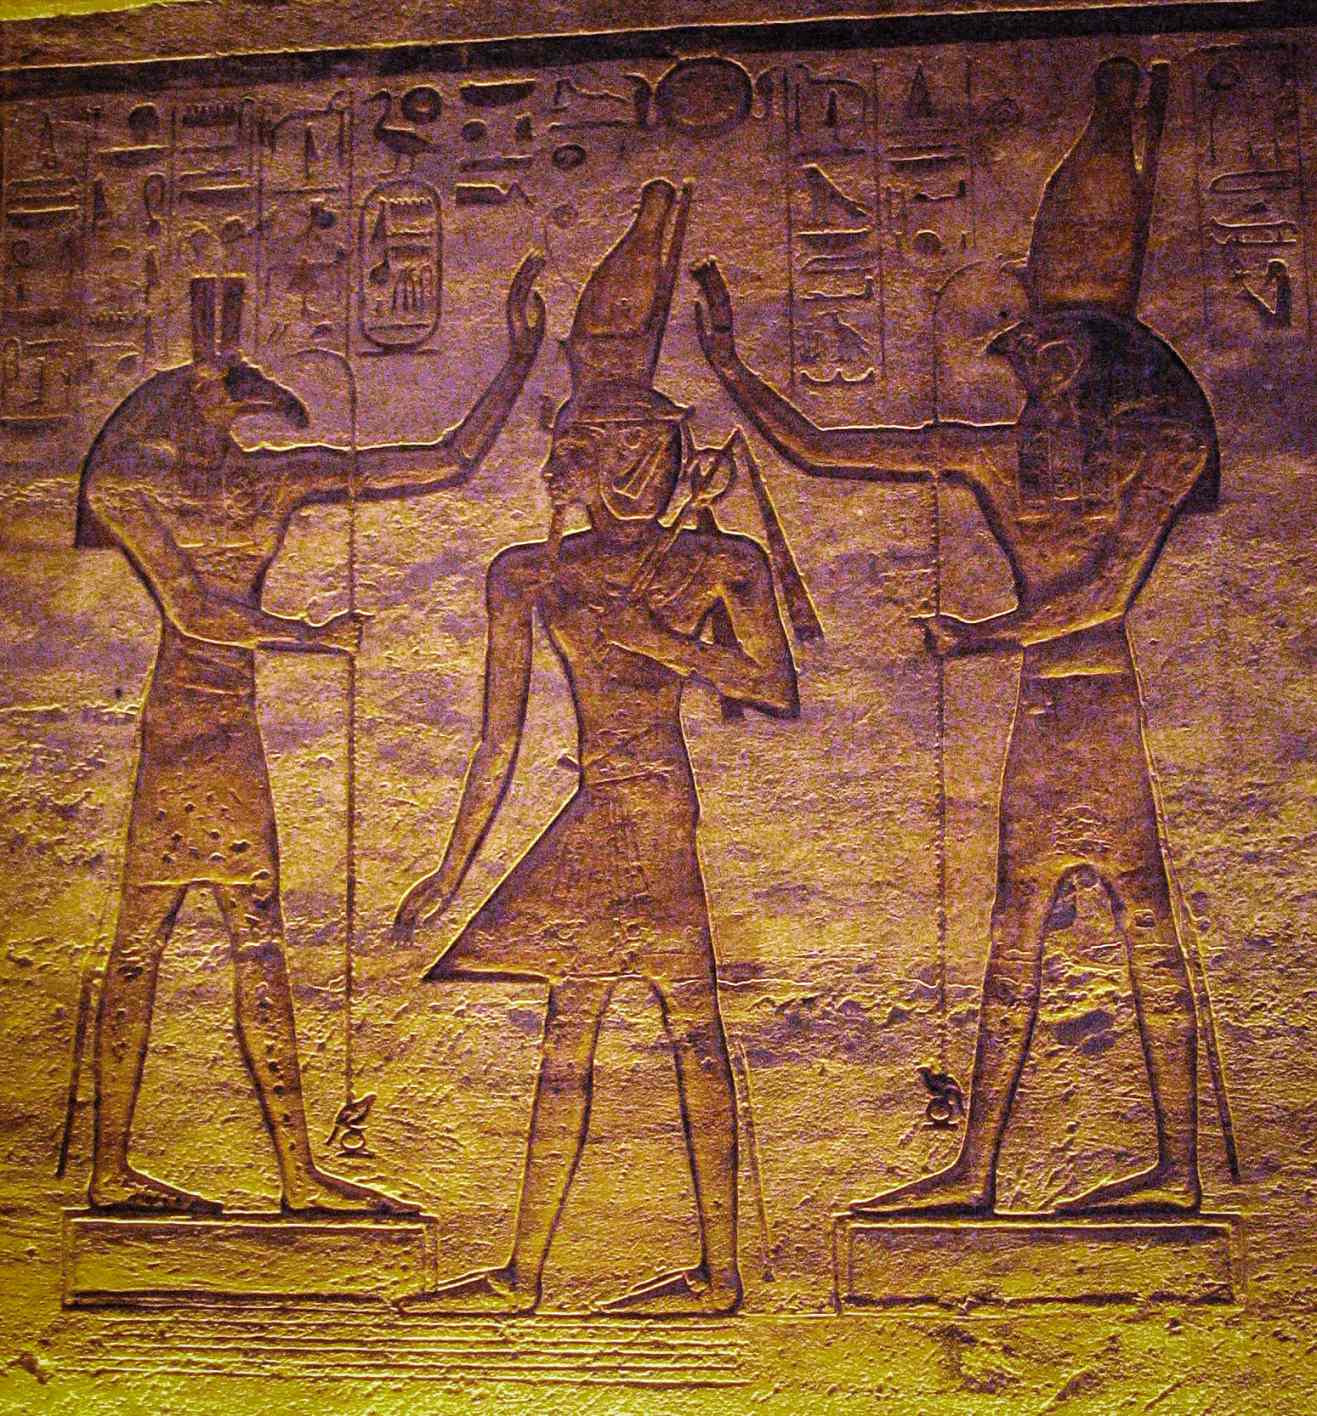 Set (Seth) ve Horus, Ramses'e tapıyor. Mevcut çalışma, Kahire Takviminde Ay'ın Seth ve değişken yıldız Algol'ün Horus tarafından temsil edilmiş olabileceğini gösteriyor.